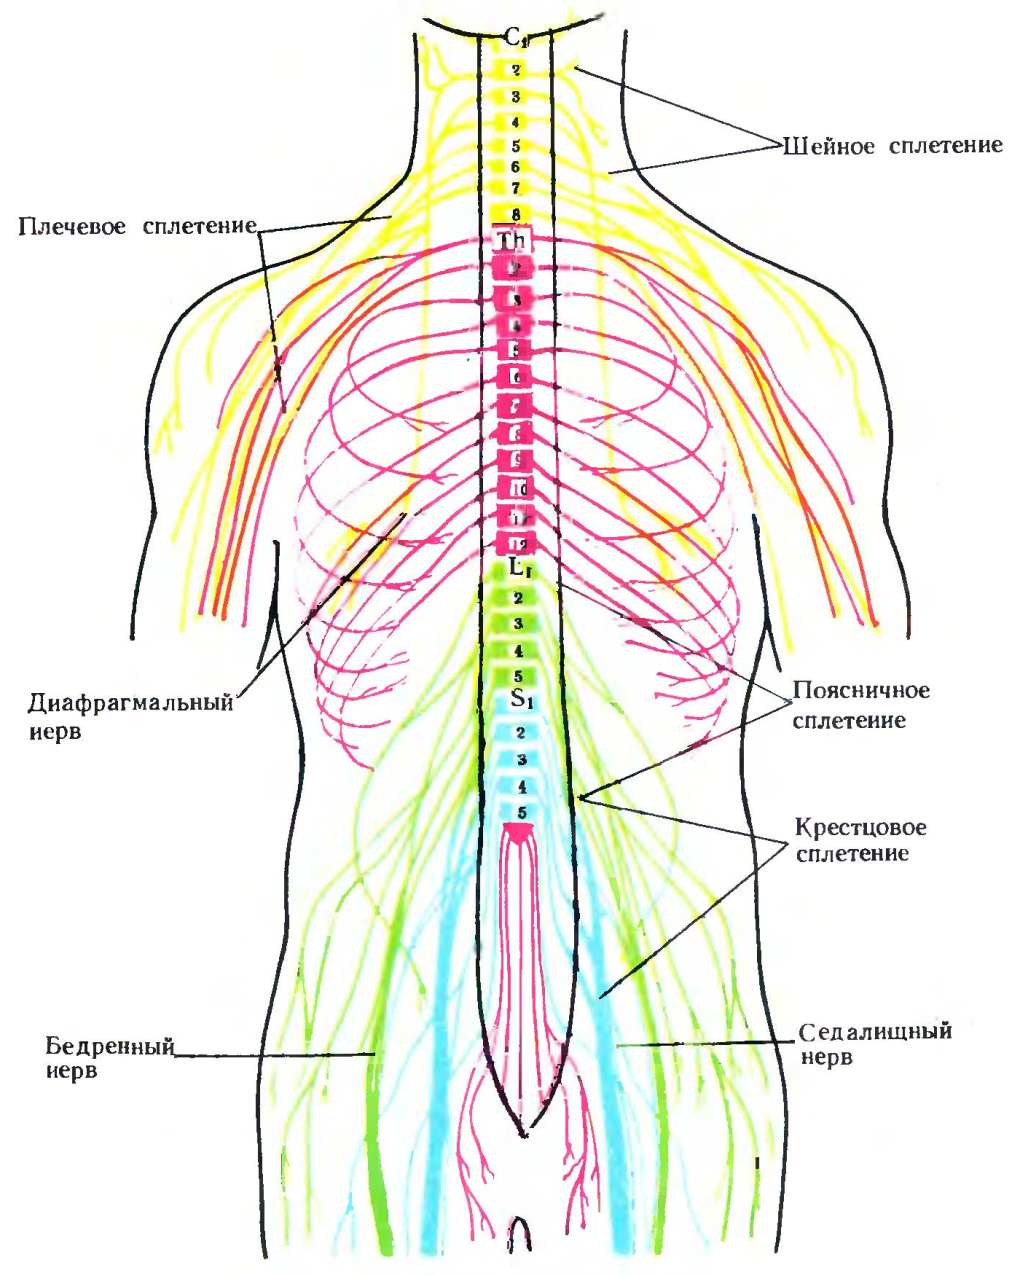 Где находится сегменты. Сплетения спинномозговых нервов схема. Сплетения спинномозговых нервов анатомия. Спинной мозг анатомия спинномозговых нервов. Иннервация позвоночника схема нервов.